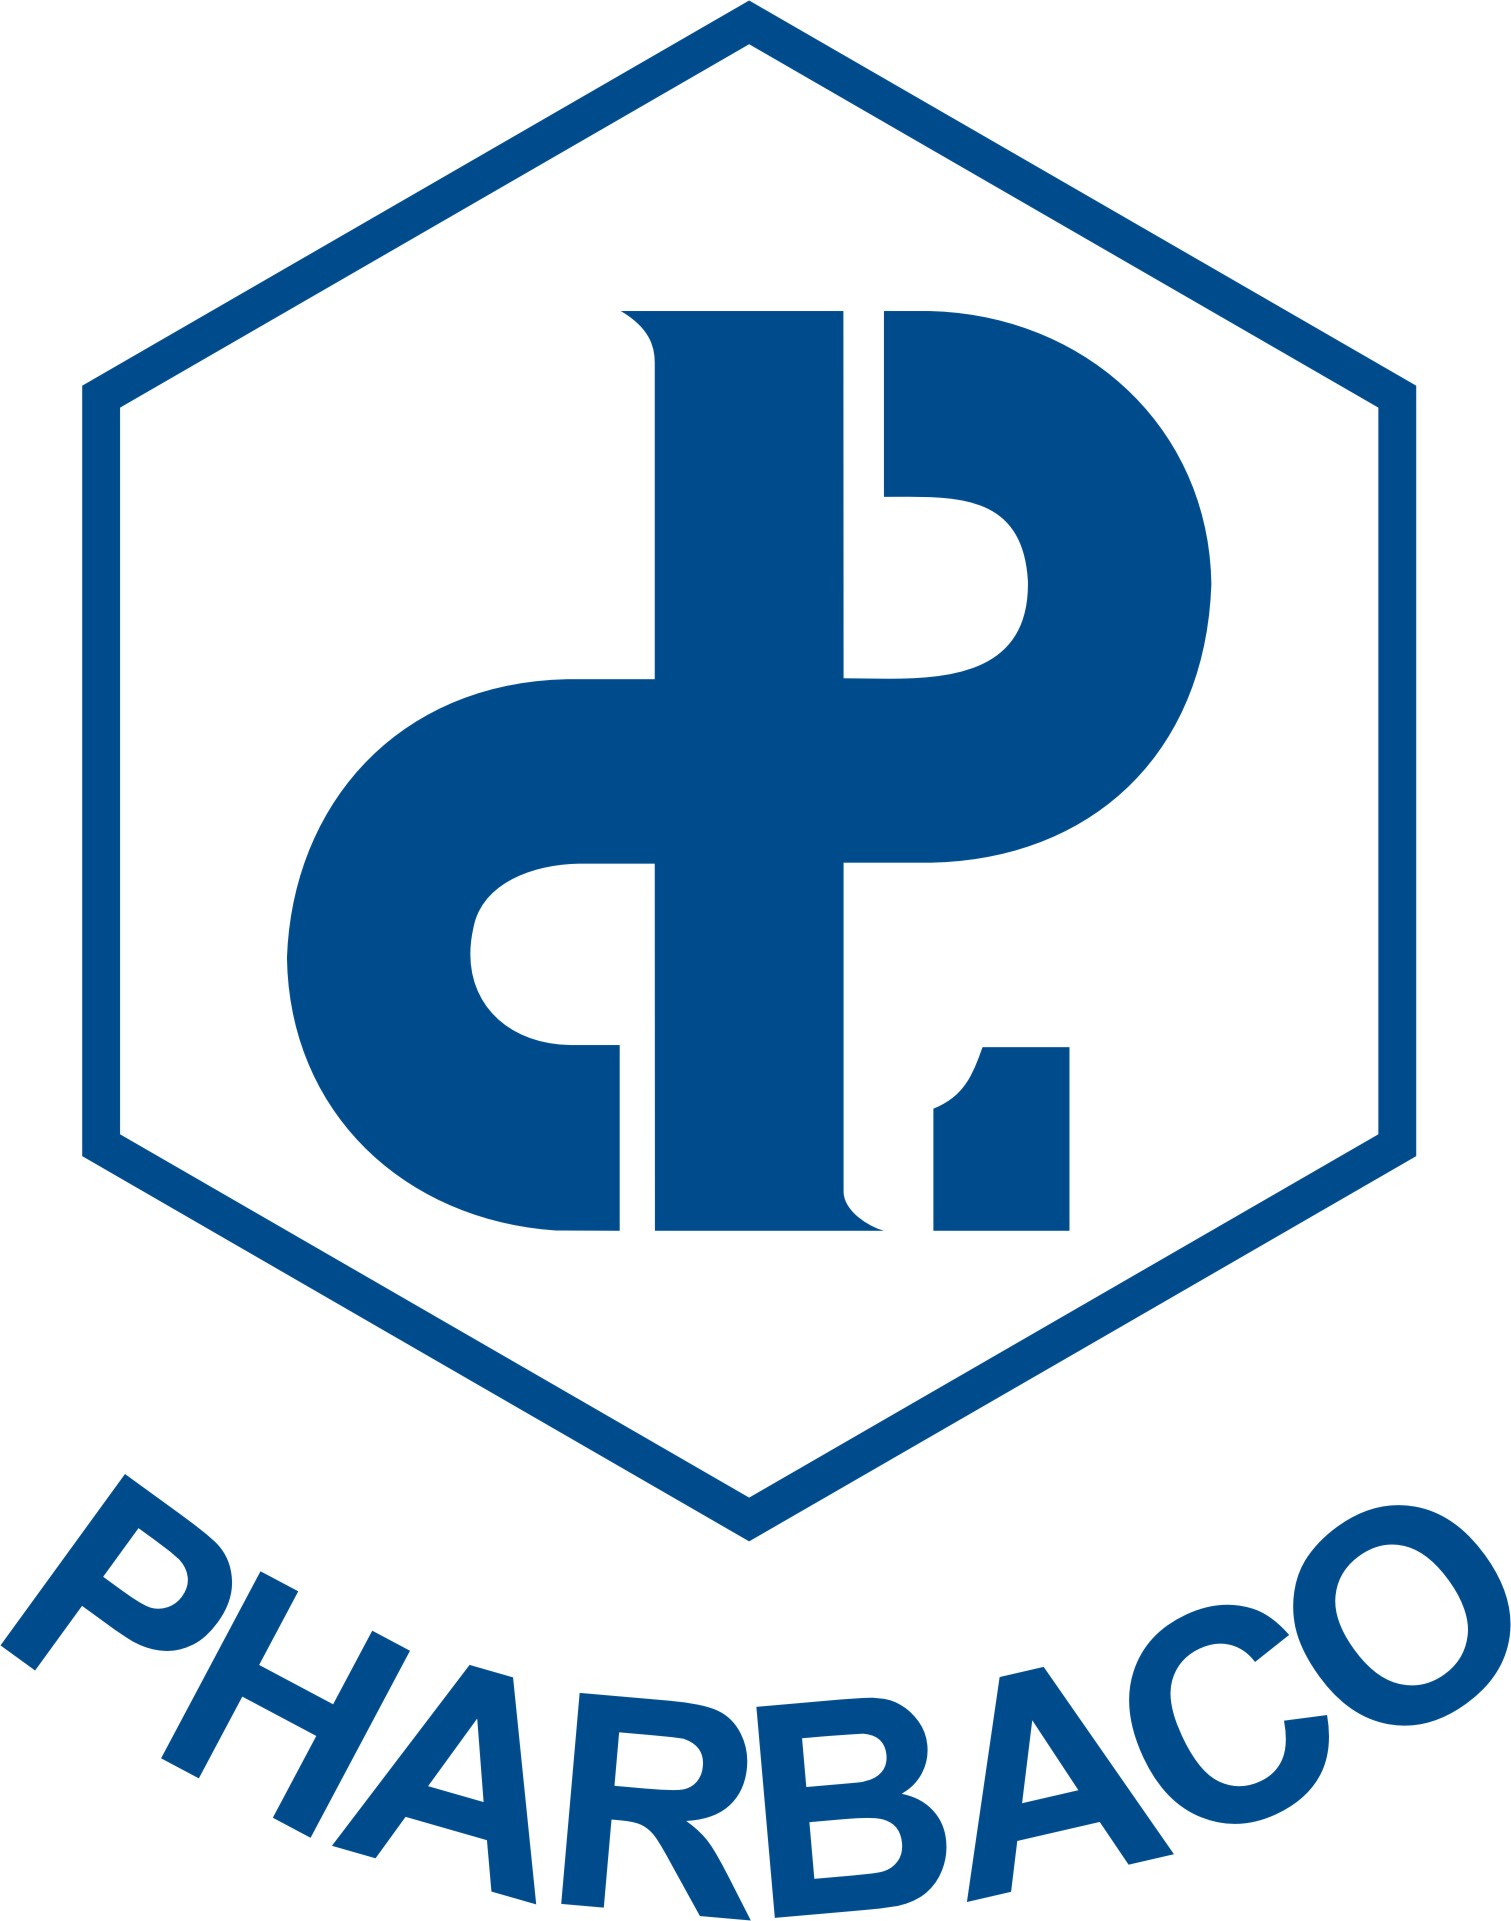 Công ty cổ phần Dược phẩm trung ương I - Pharbaco